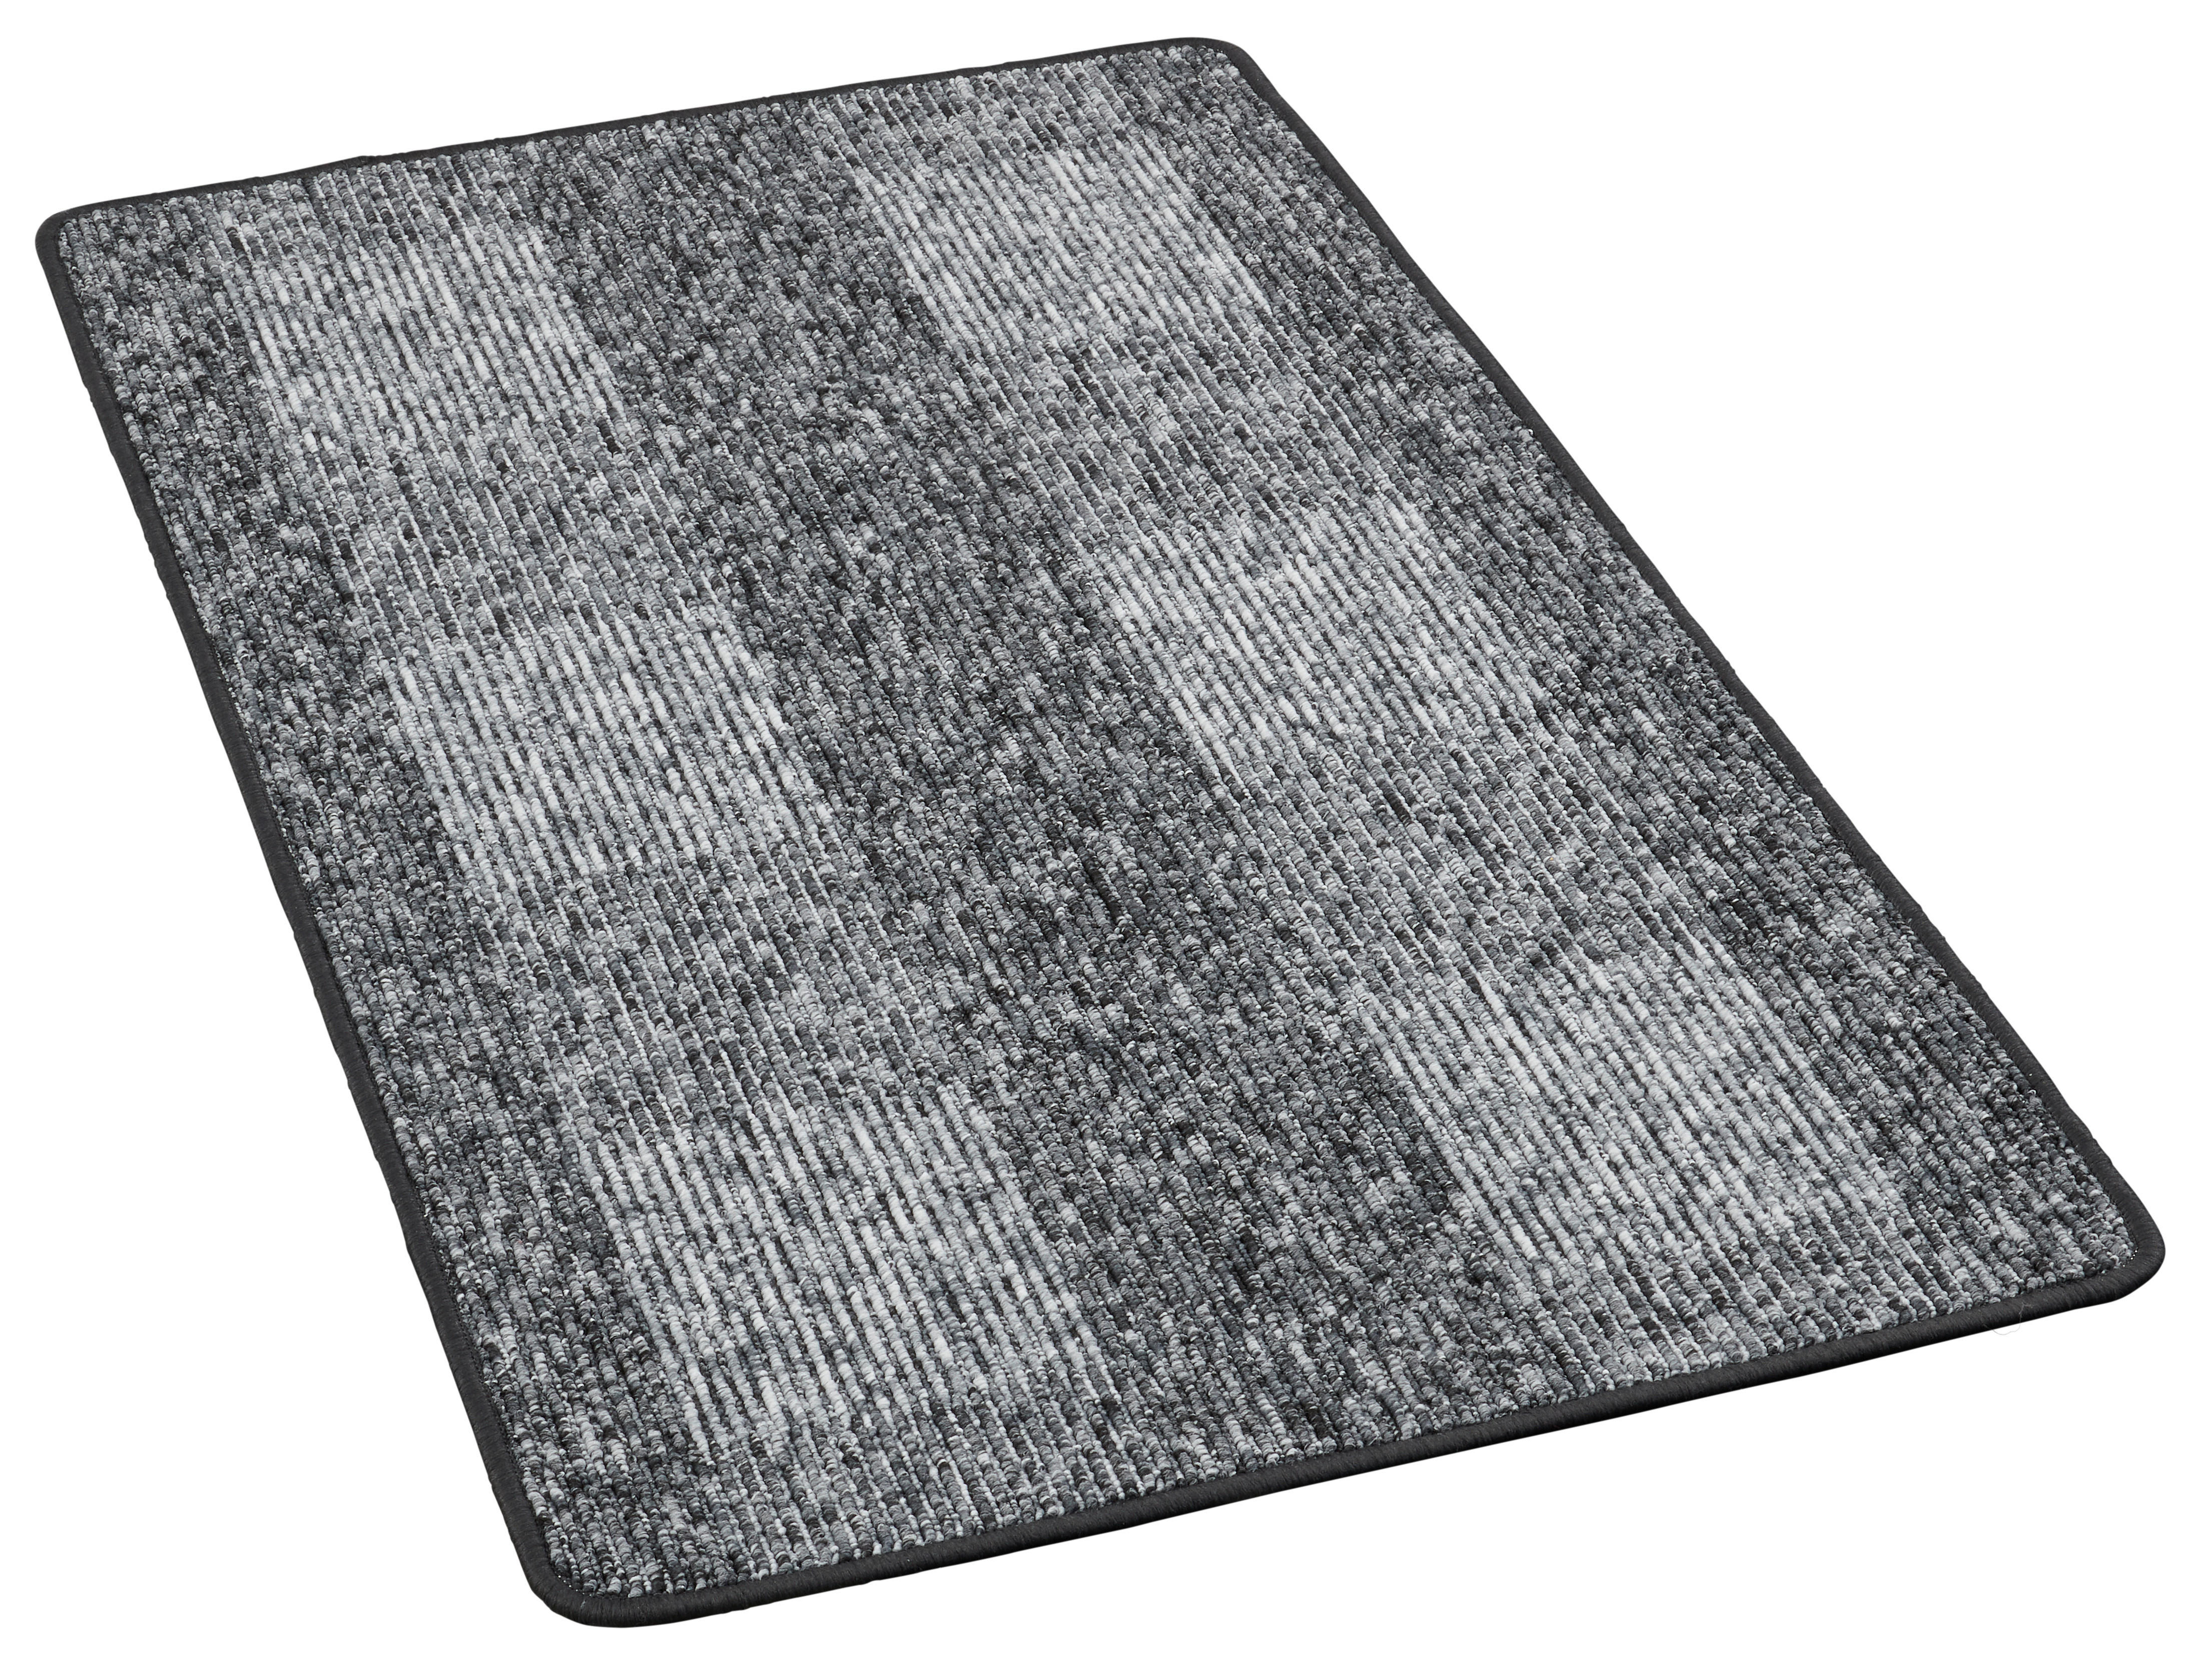 Teppich Dijon grau B/L: ca. 67x120 cm Dijon - grau (67,00/120,00cm)